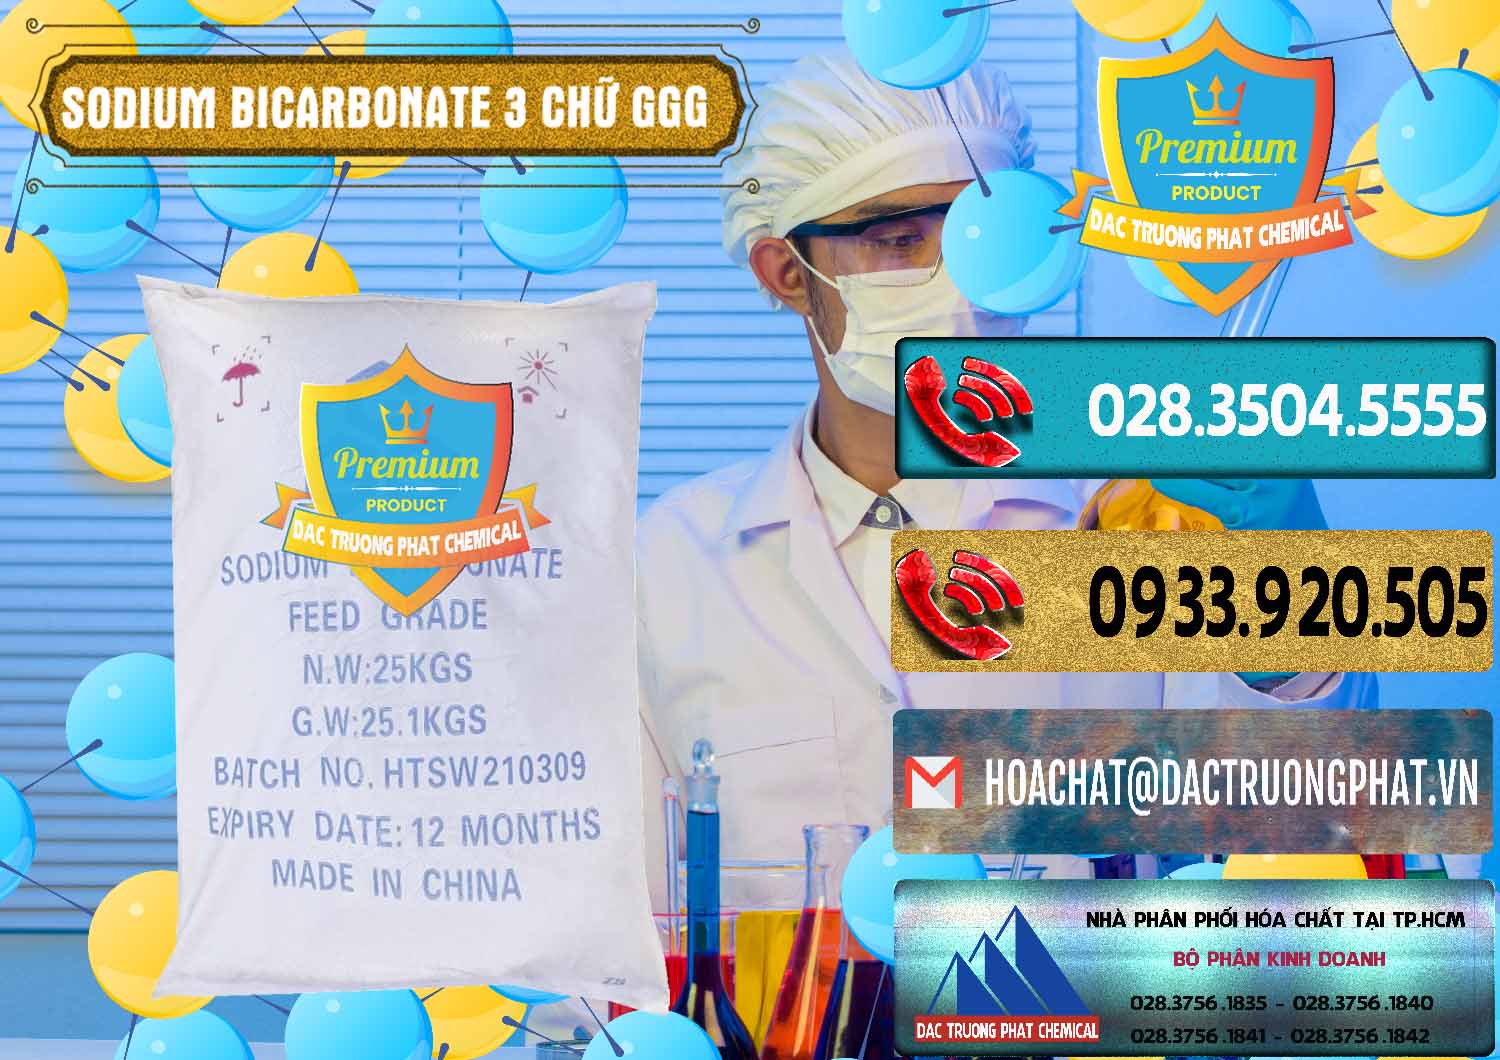 Cty kinh doanh & bán Sodium Bicarbonate – Bicar NaHCO3 Food Grade 3 Chữ GGG Trung Quốc China - 0259 - Công ty kinh doanh ( cung cấp ) hóa chất tại TP.HCM - hoachatdetnhuom.com